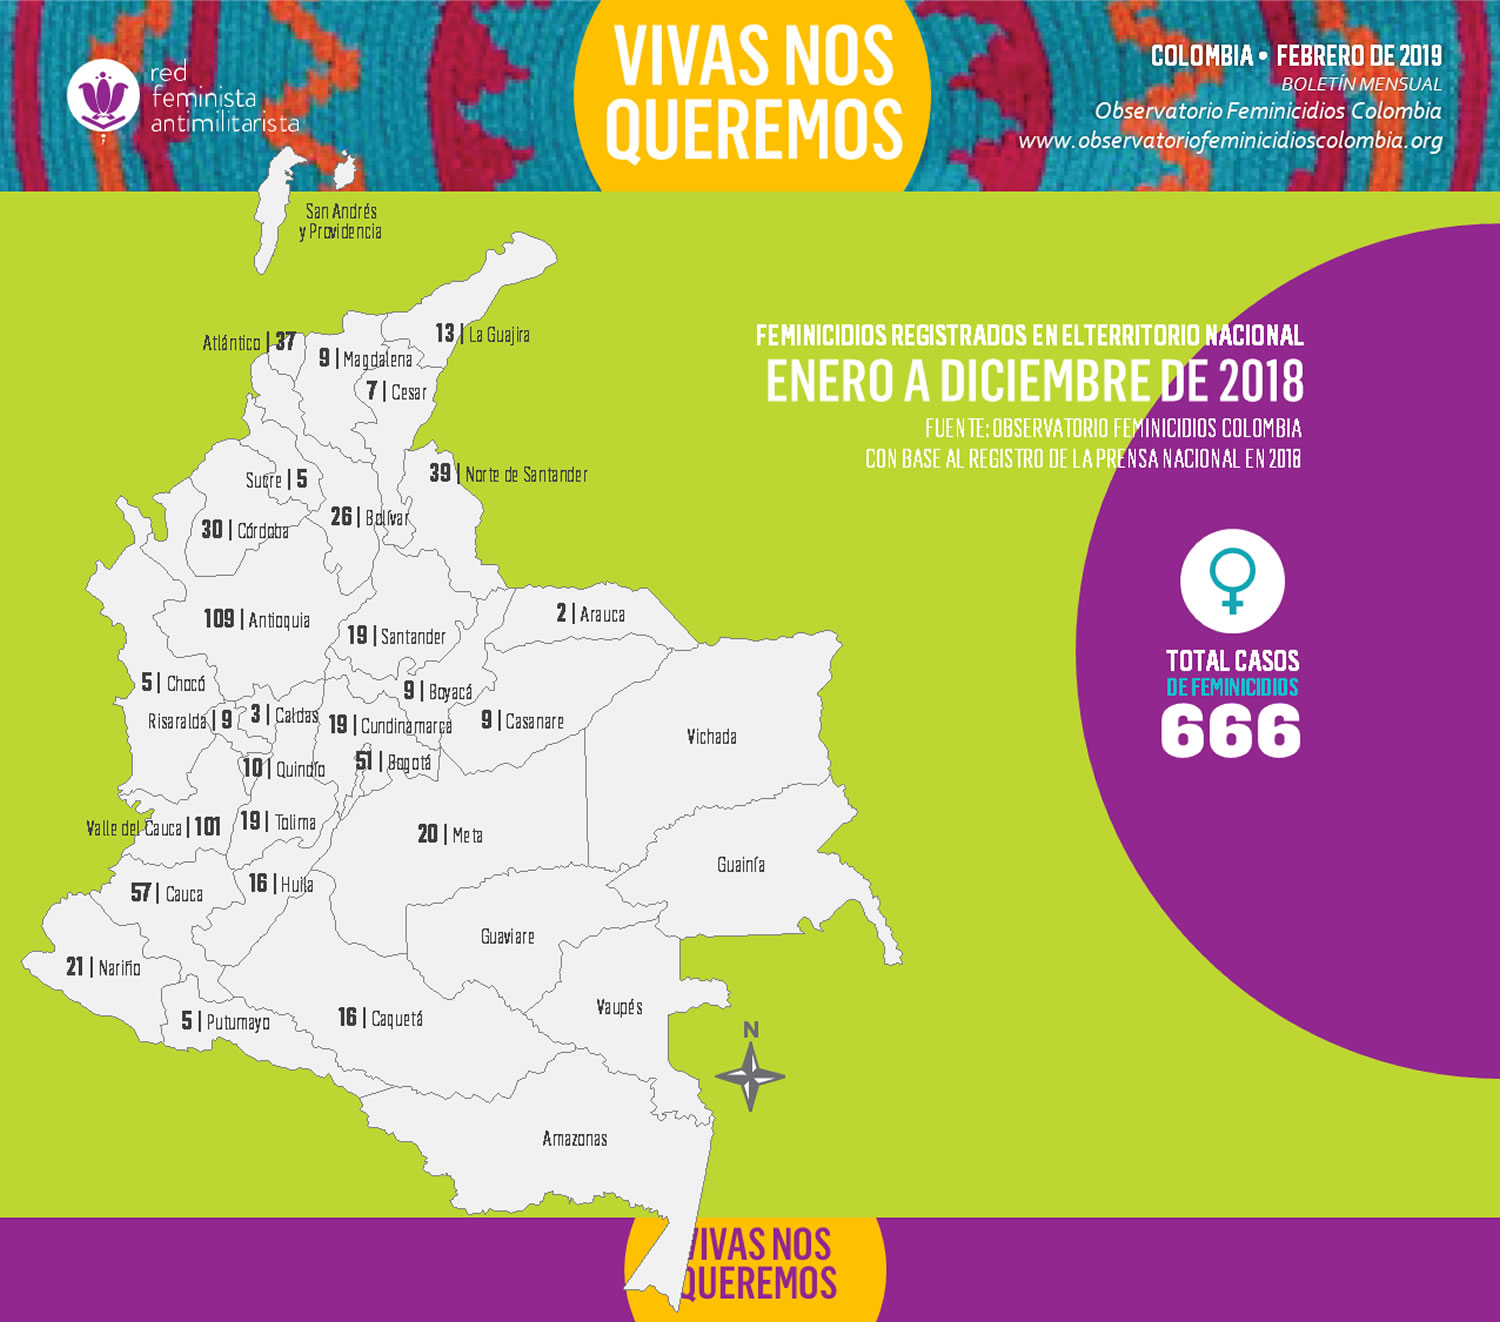 Feminicidios registrados en Colombia - Enero a diciembre de 2018